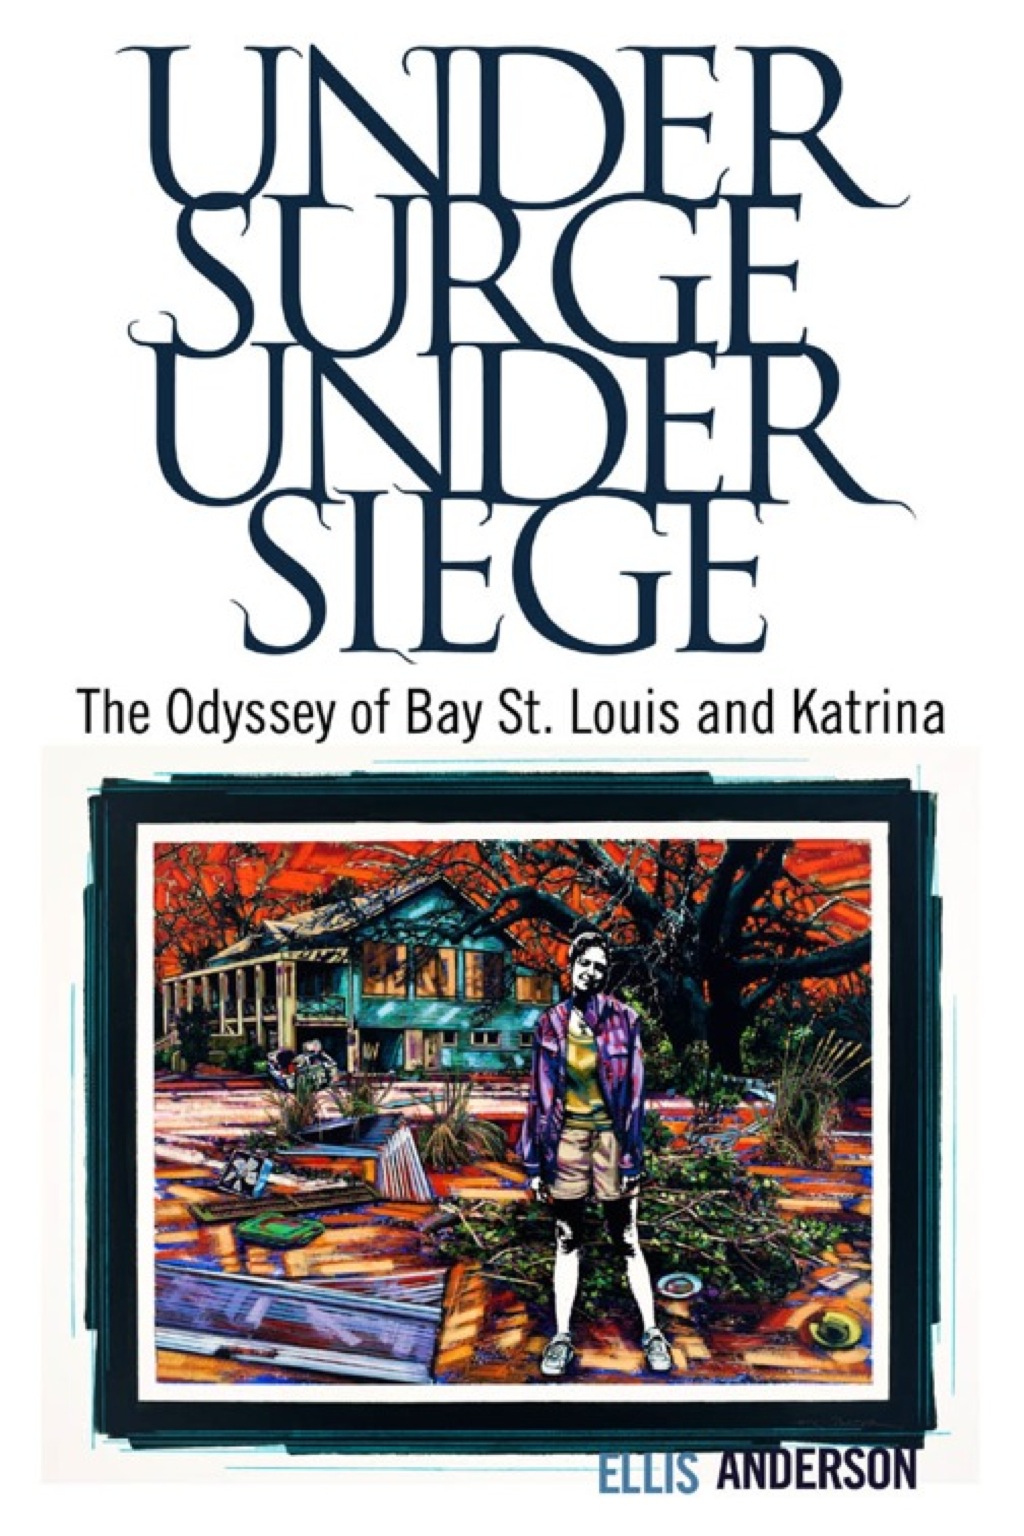 Under Surge  Under Siege (eBook) - Ellis Anderson,